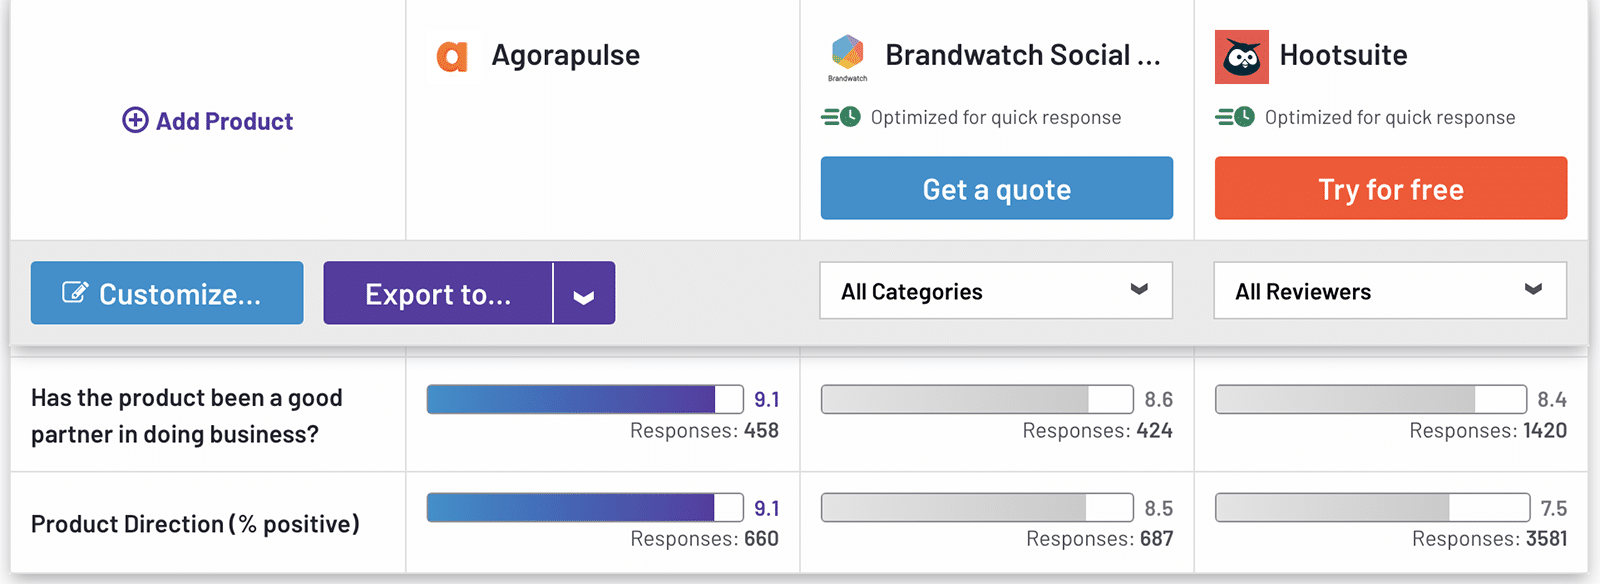 Comparaison G2 Agorapulse, Brandwatch, Hootsuite orientation produit